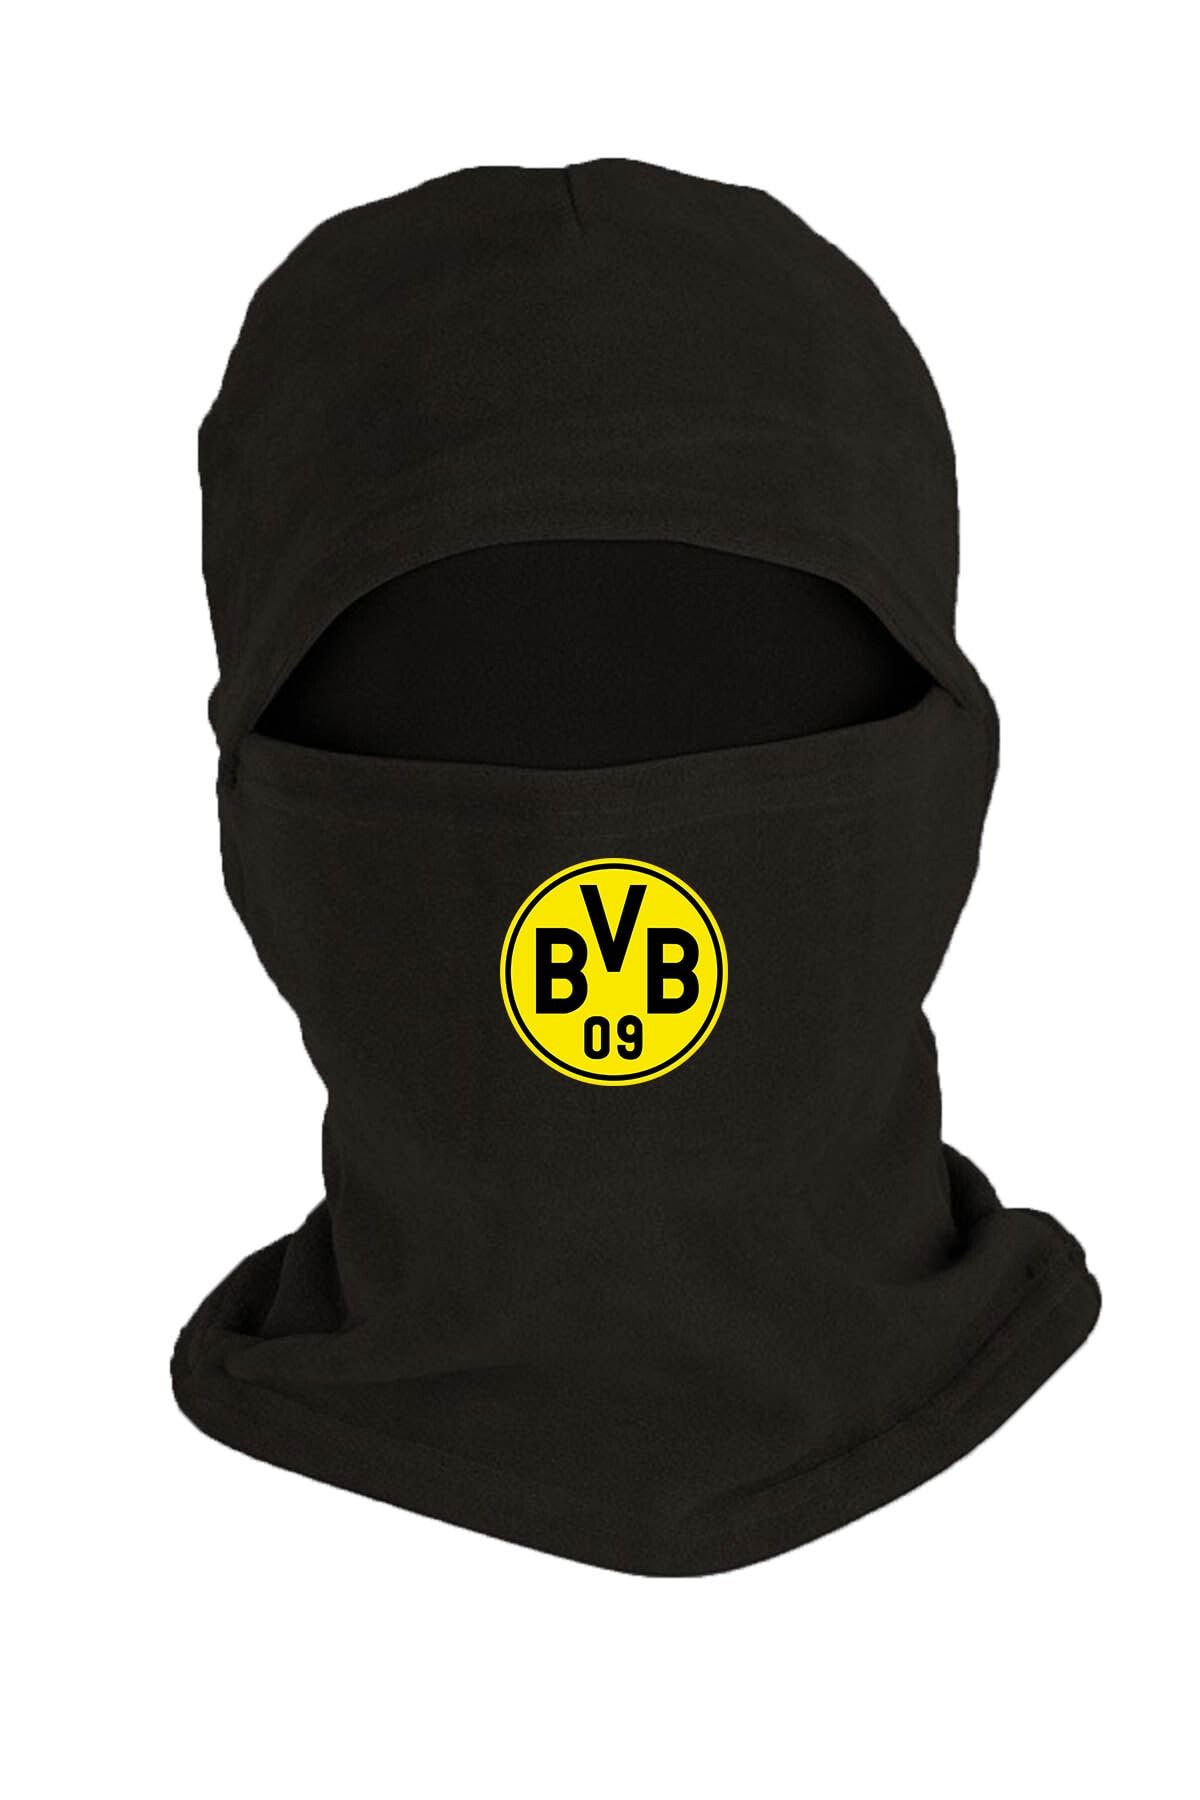 Zeron Tasarım Borussia Dortmund Baskılı Kışlık Polar Kar Maskesi Siyah Bll1234